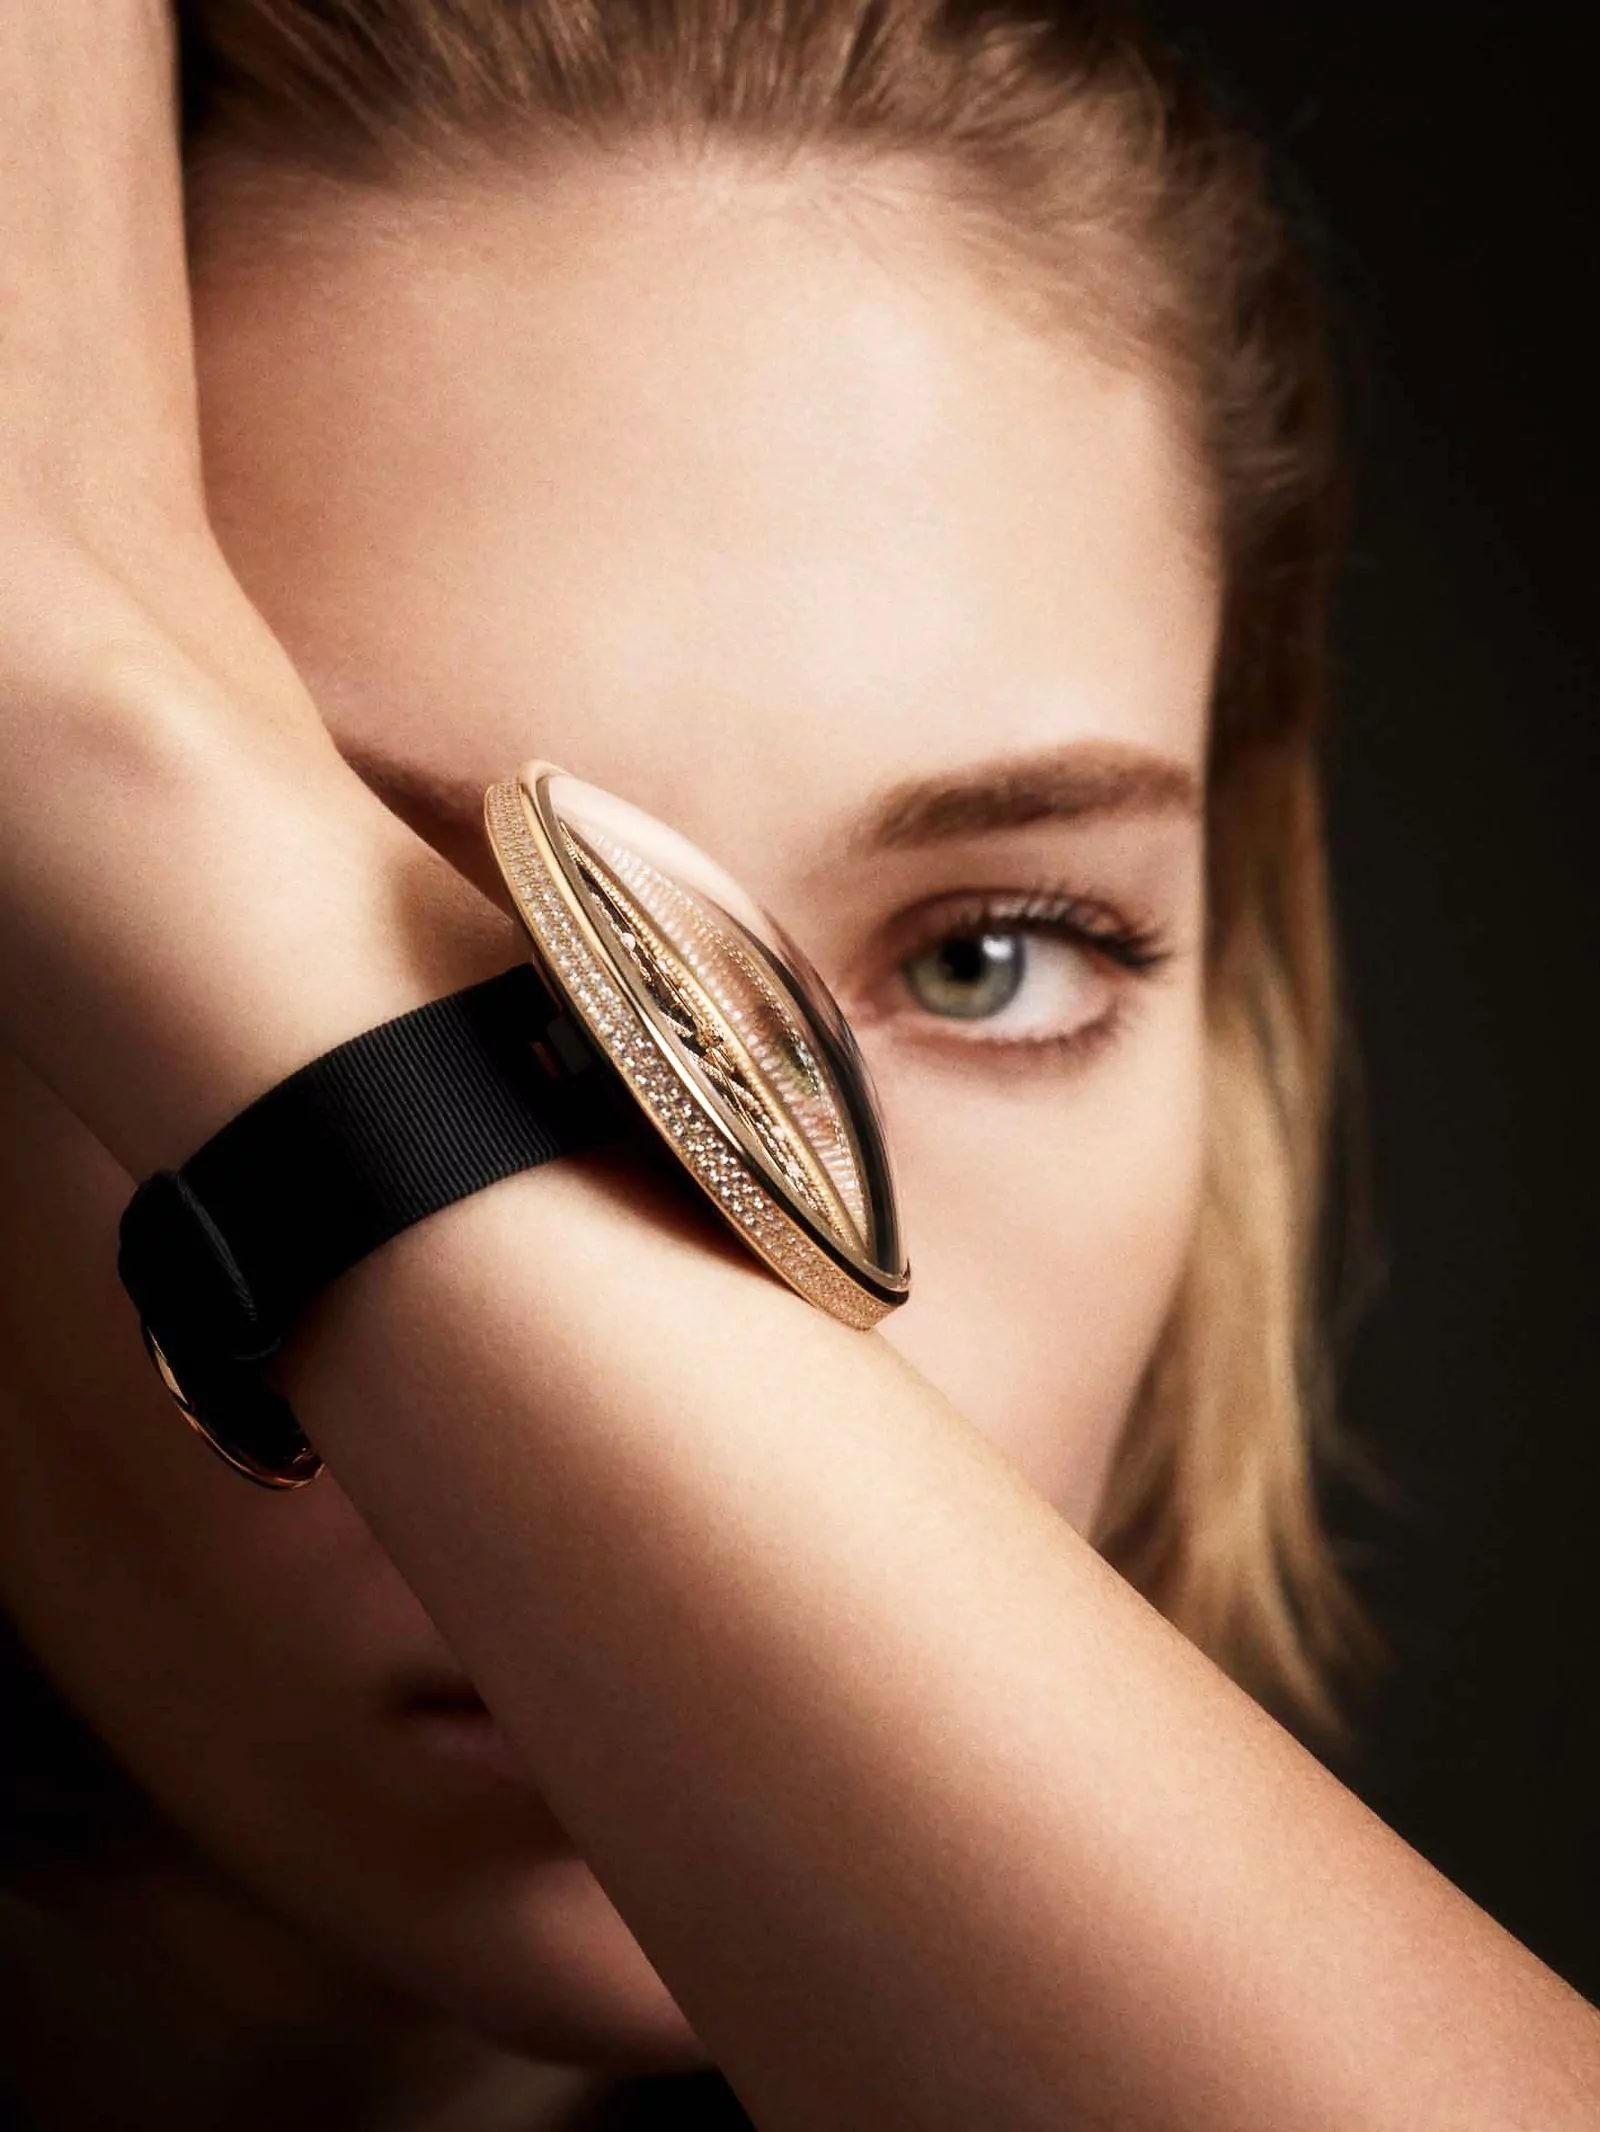 часы Mademoiselle Privé Pique-Aiguilles вдохновлены наручной игольницей Габриэль Шанель, фото 3